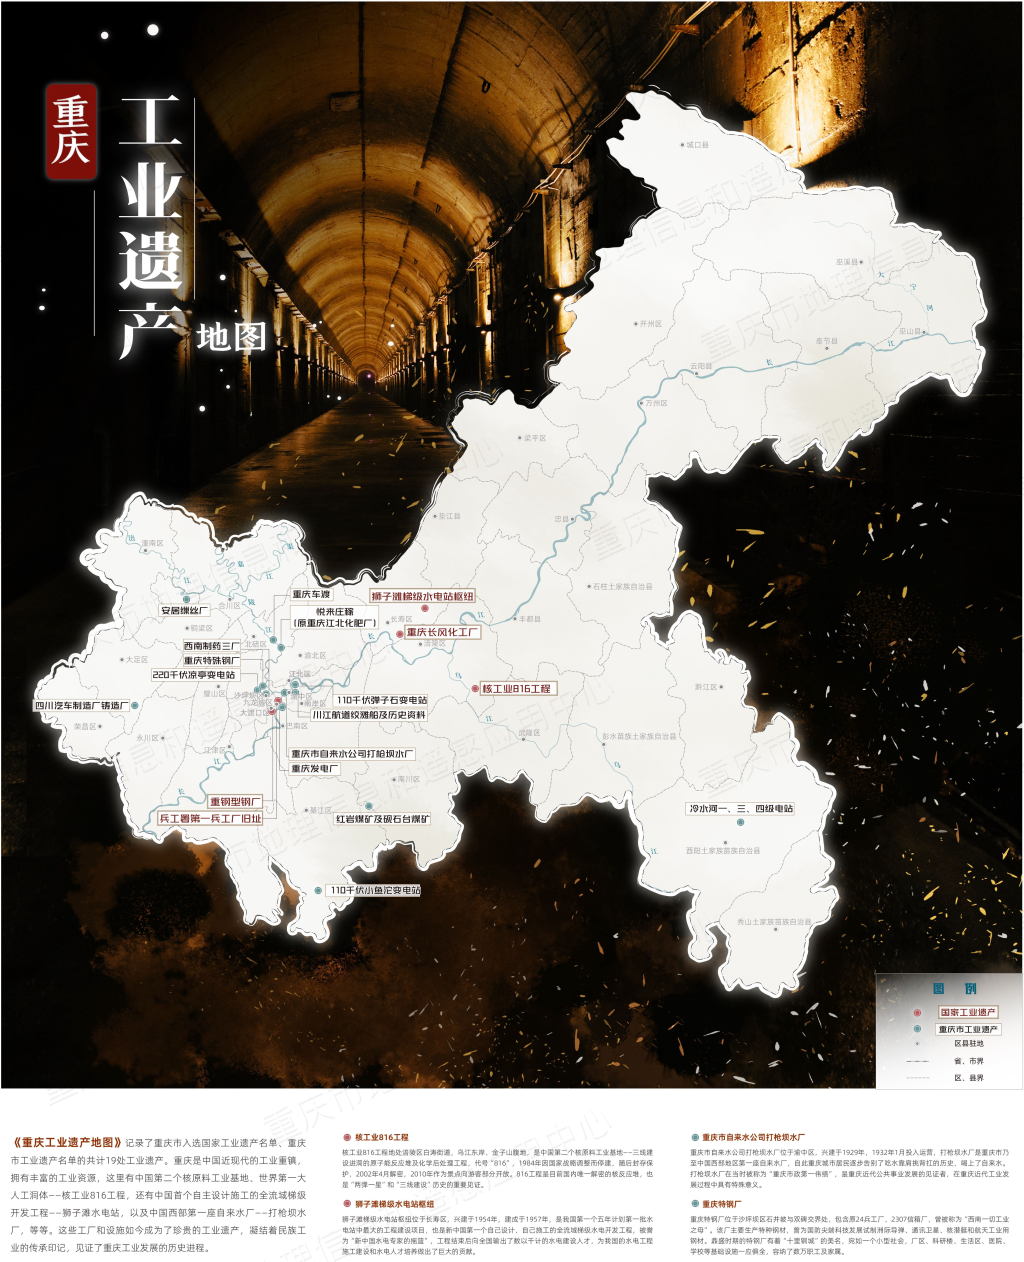 记录19处工业遗产 重庆工业遗产地图来了